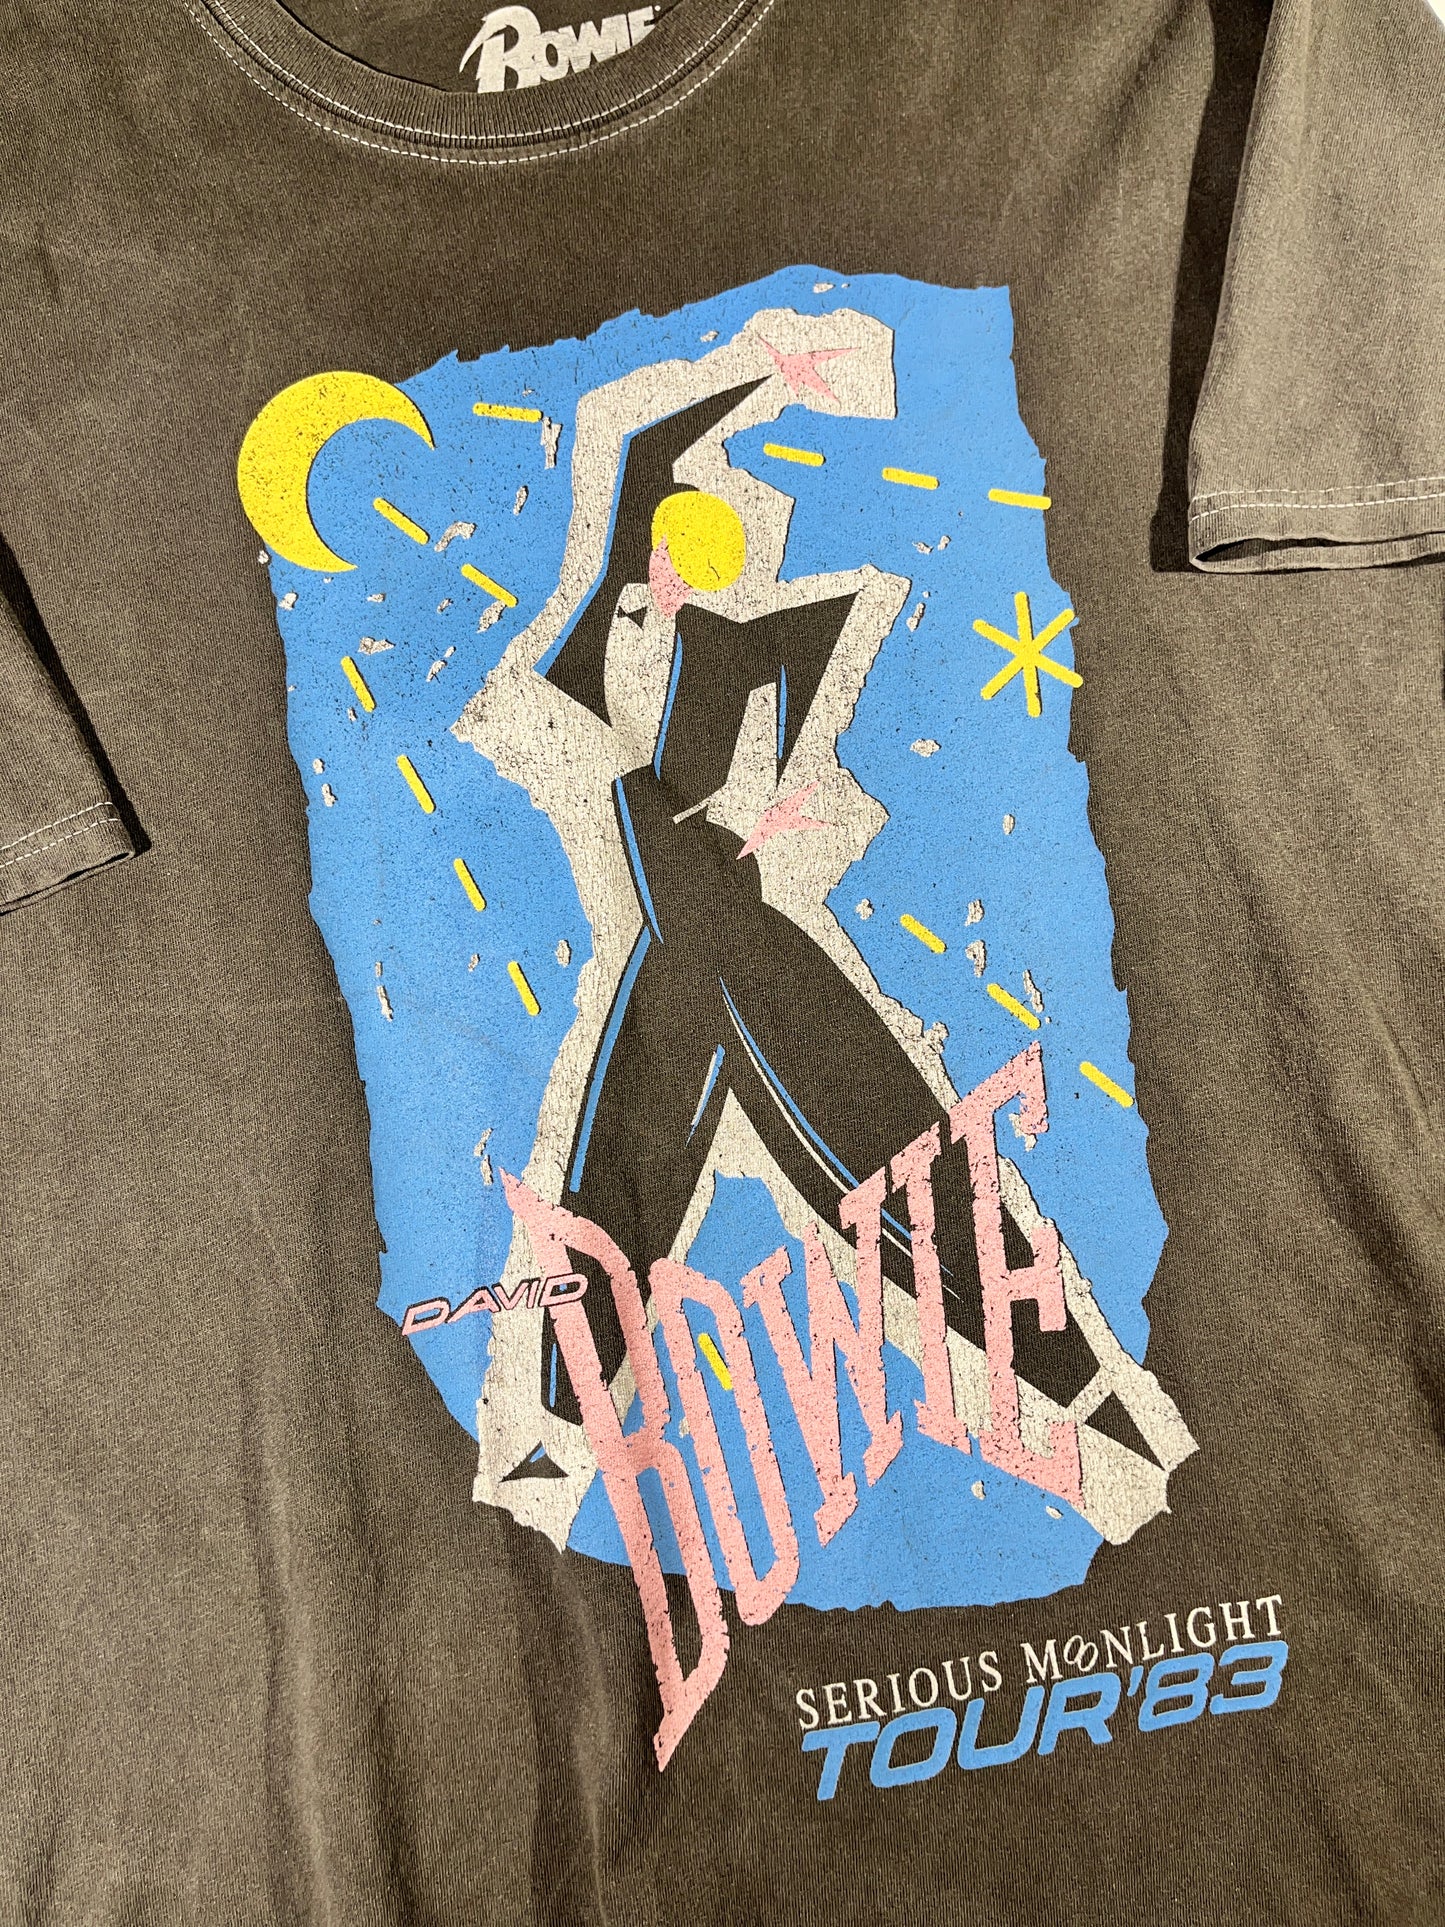 Vintage David Bowie T-Shirt Serious Moonlight Tour 83